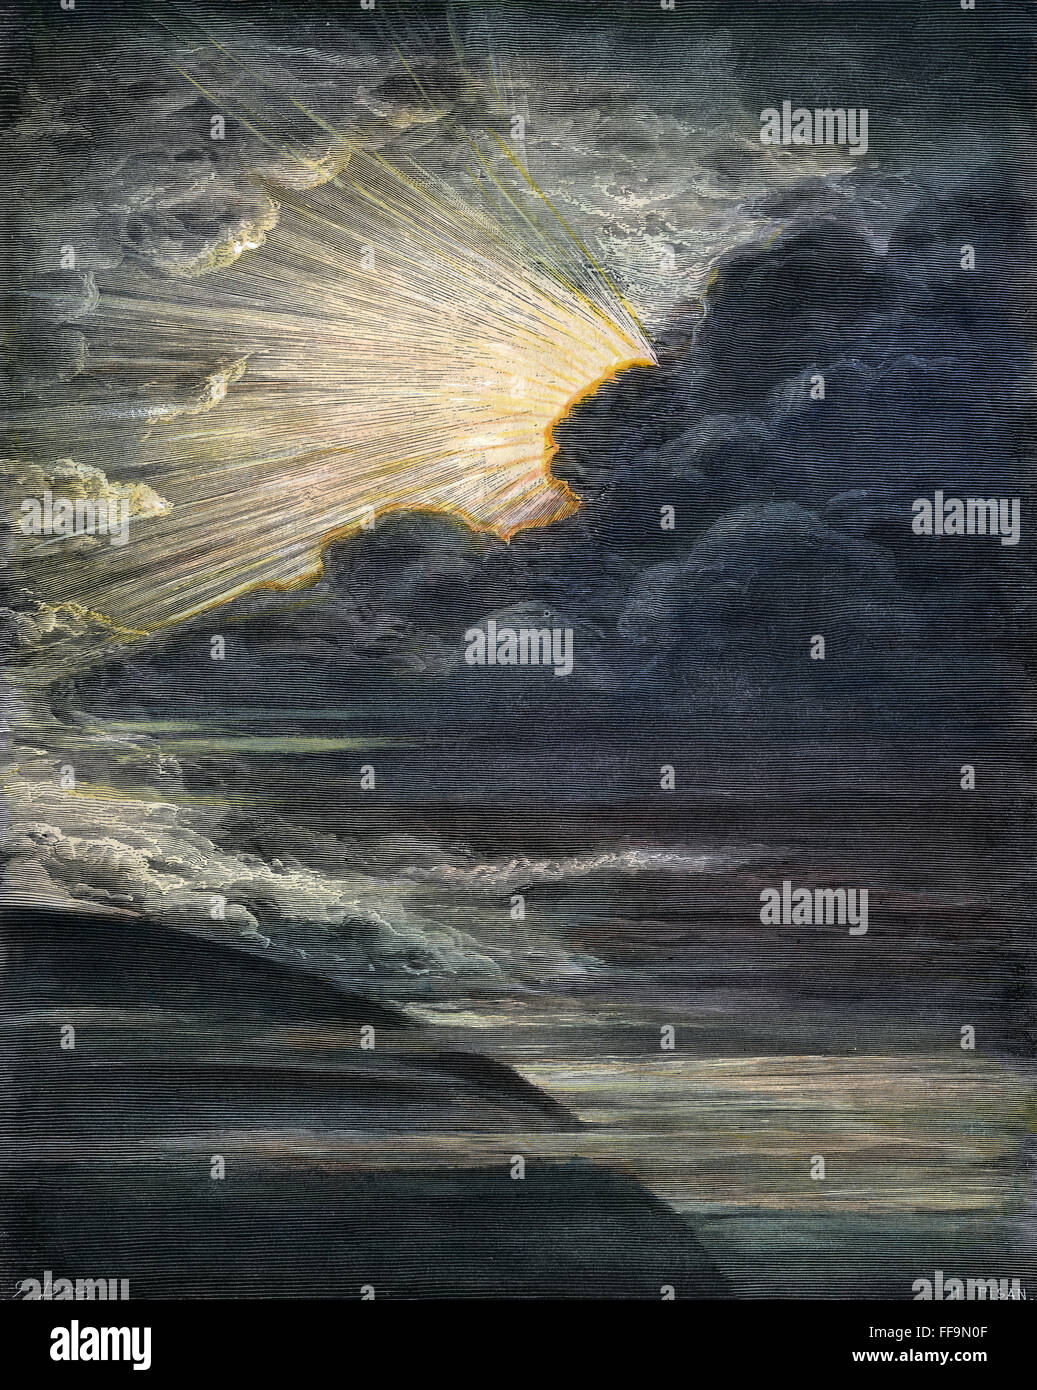 SCHÖPFUNG DES LICHTS.  /nThe Schöpfung des Lichts (Genesis 1:2). Holzstich nach Gustave DorΘ (1833-1883). Stockfoto